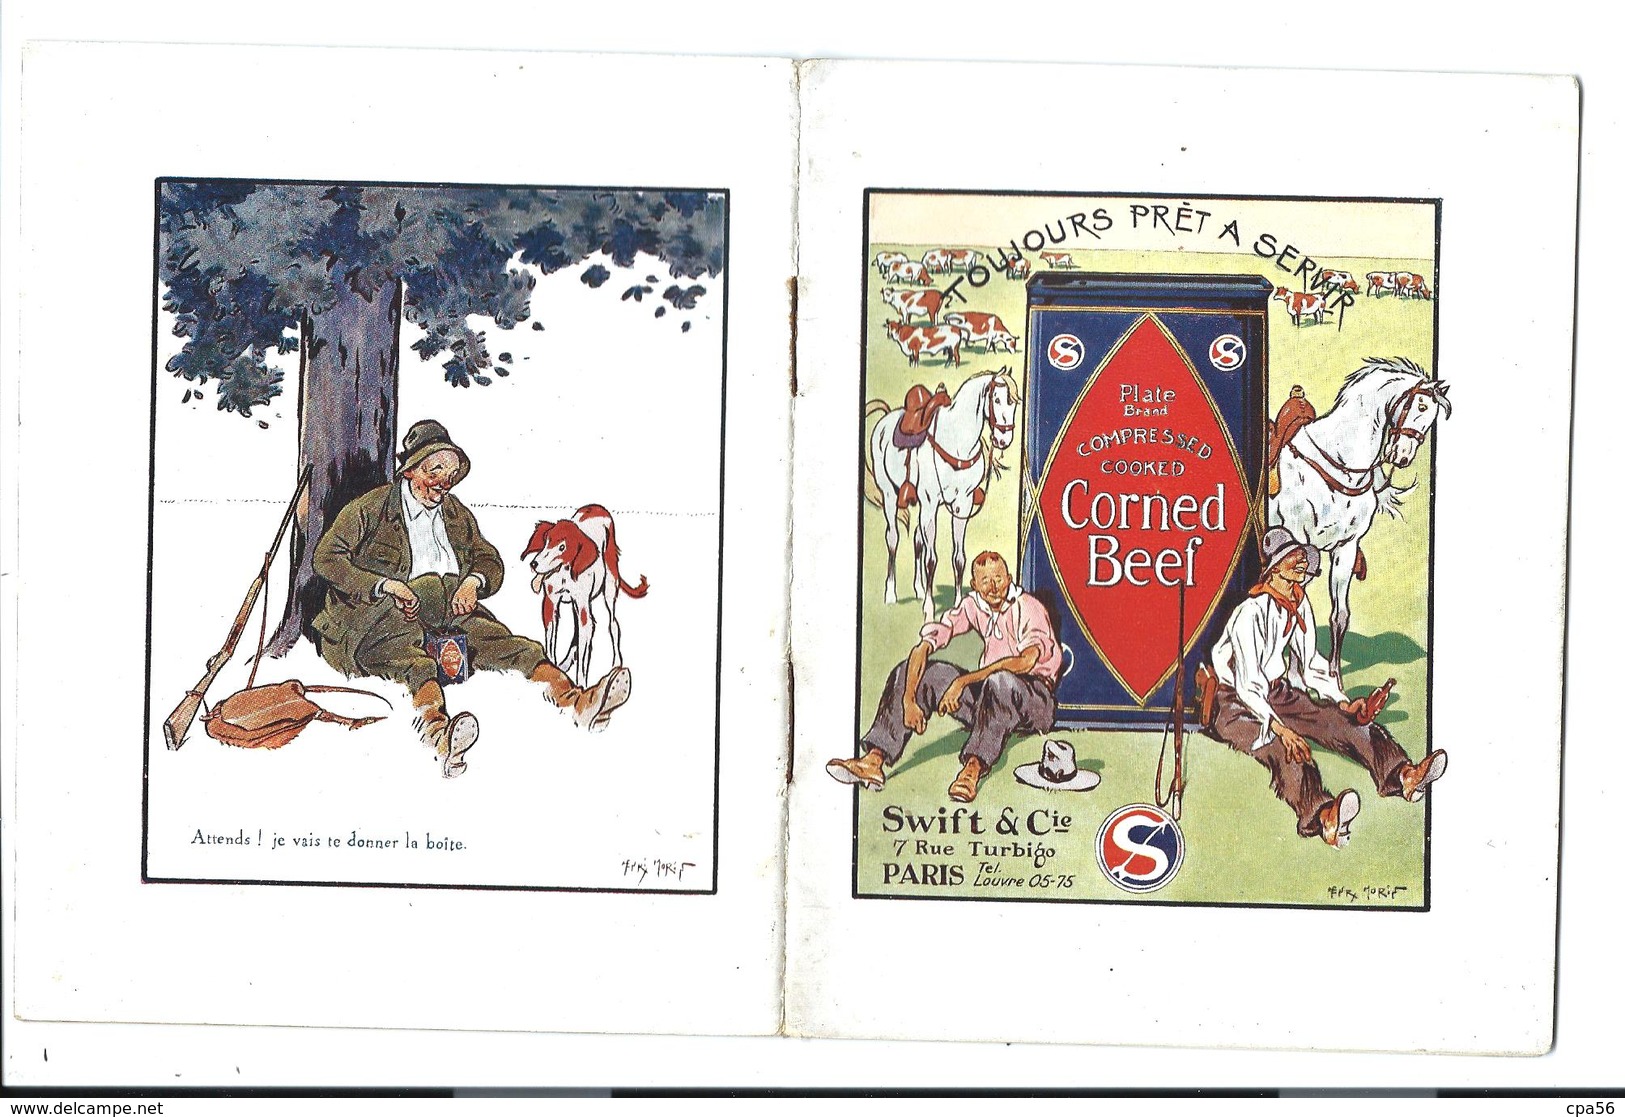 Rare LIVRET De CUISINE, Années 50 - 30 Recettes Illustrées De CORNED BEEF - Gastronomie